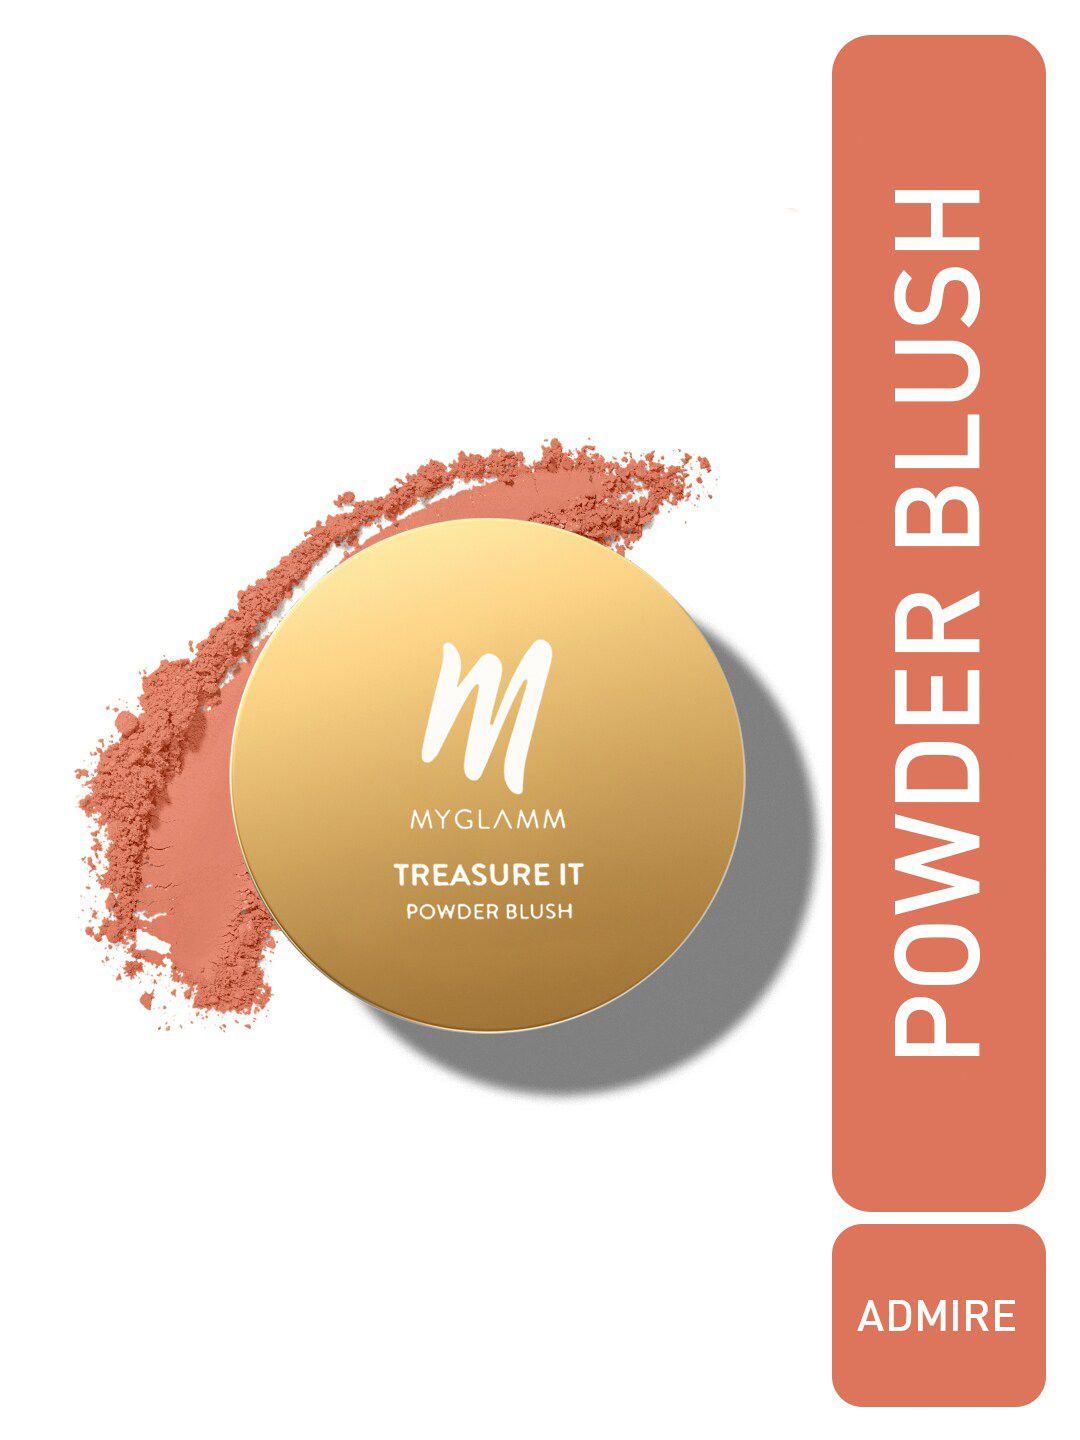 myglamm-treasure-it-powder-matte-blush---4g---admire